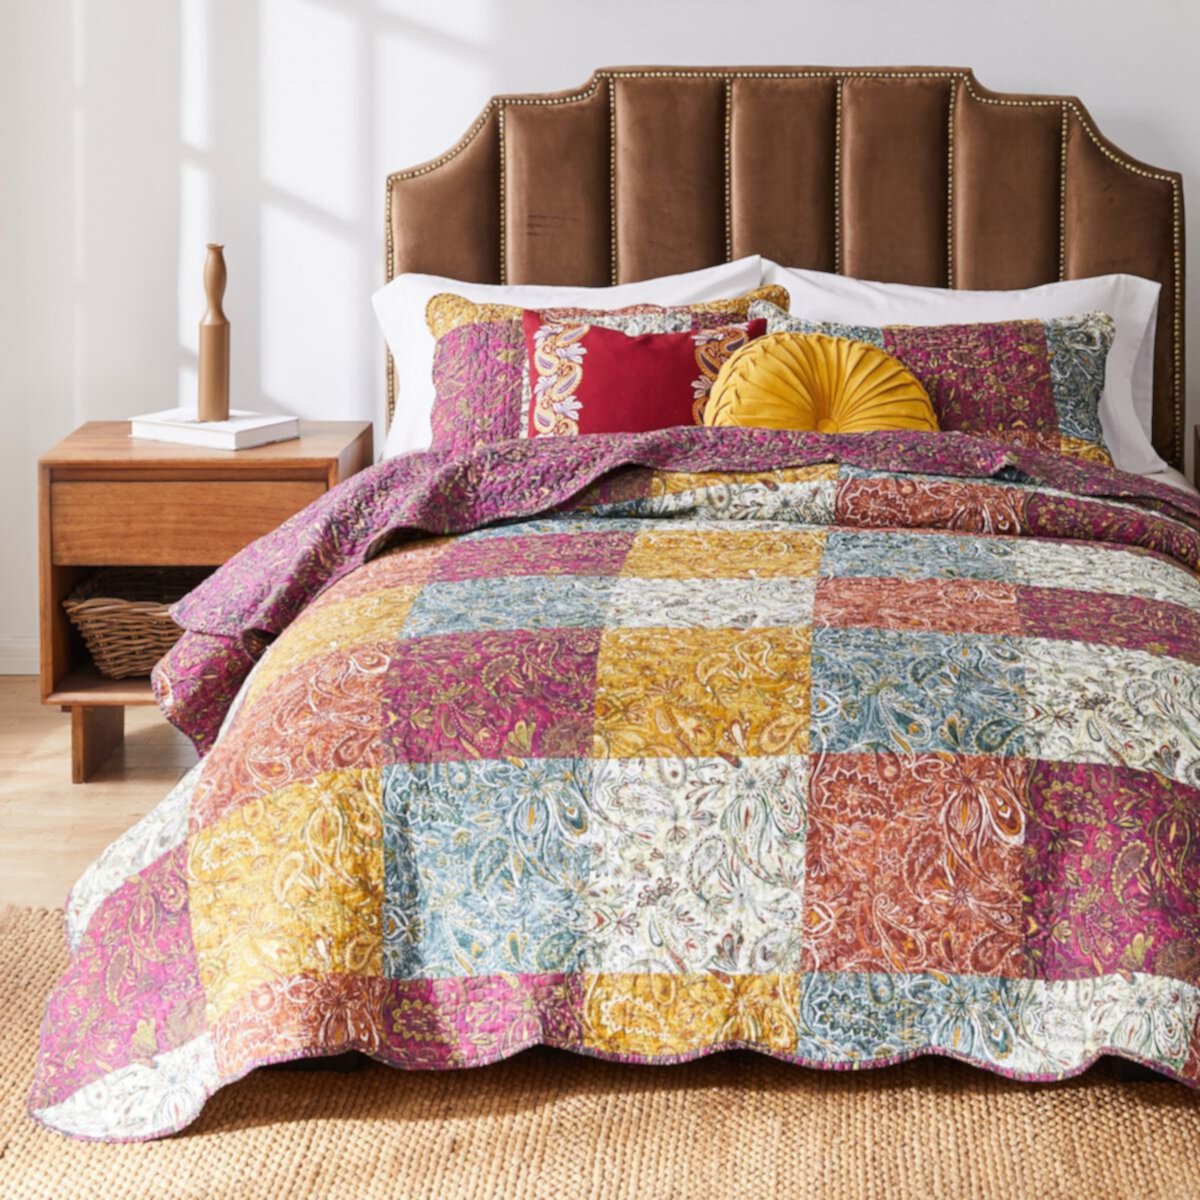 Комплект одеял для сна Barefoot Bungalow с узором пейсли Barefoot Bungalow